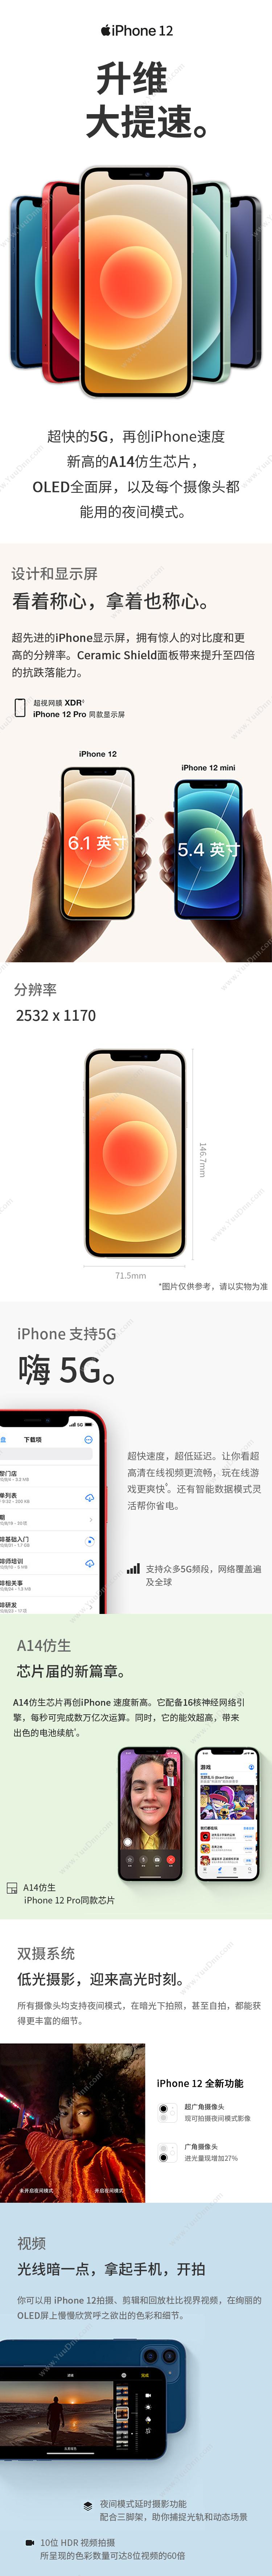 苹果 Apple iPhone 12 (MGH43CH/A) 256G 蓝色 移动联通电信5G手机 手机